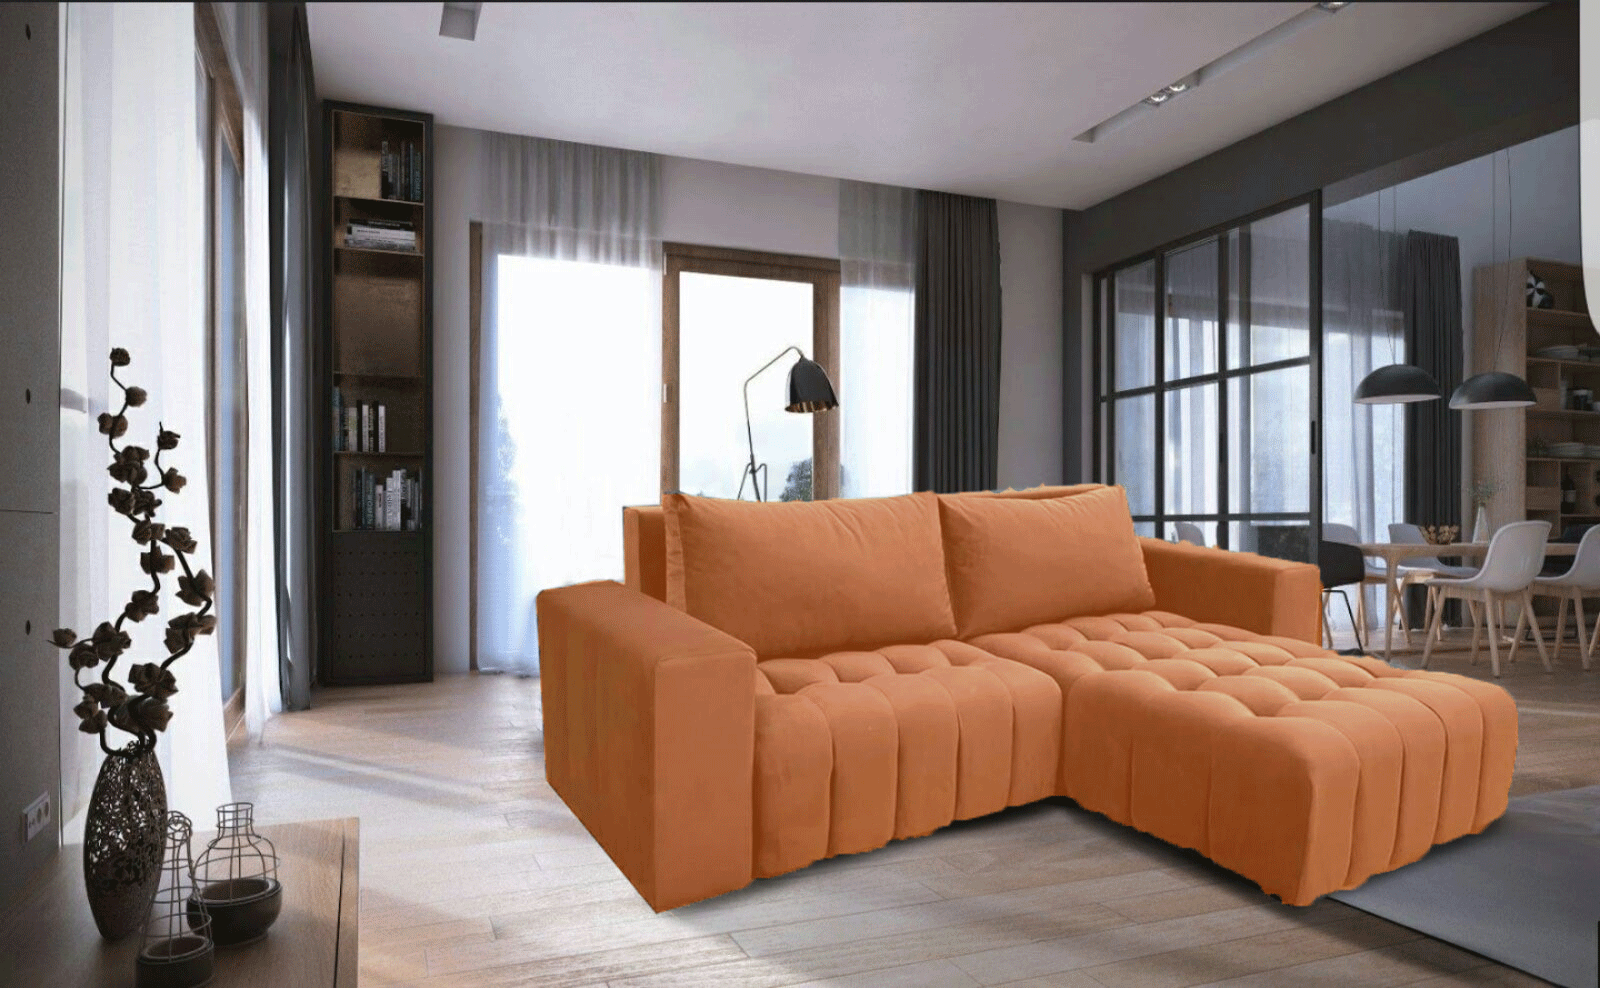 Brands FSH Massage Chairs Neo sofa bed w/ storage Orange